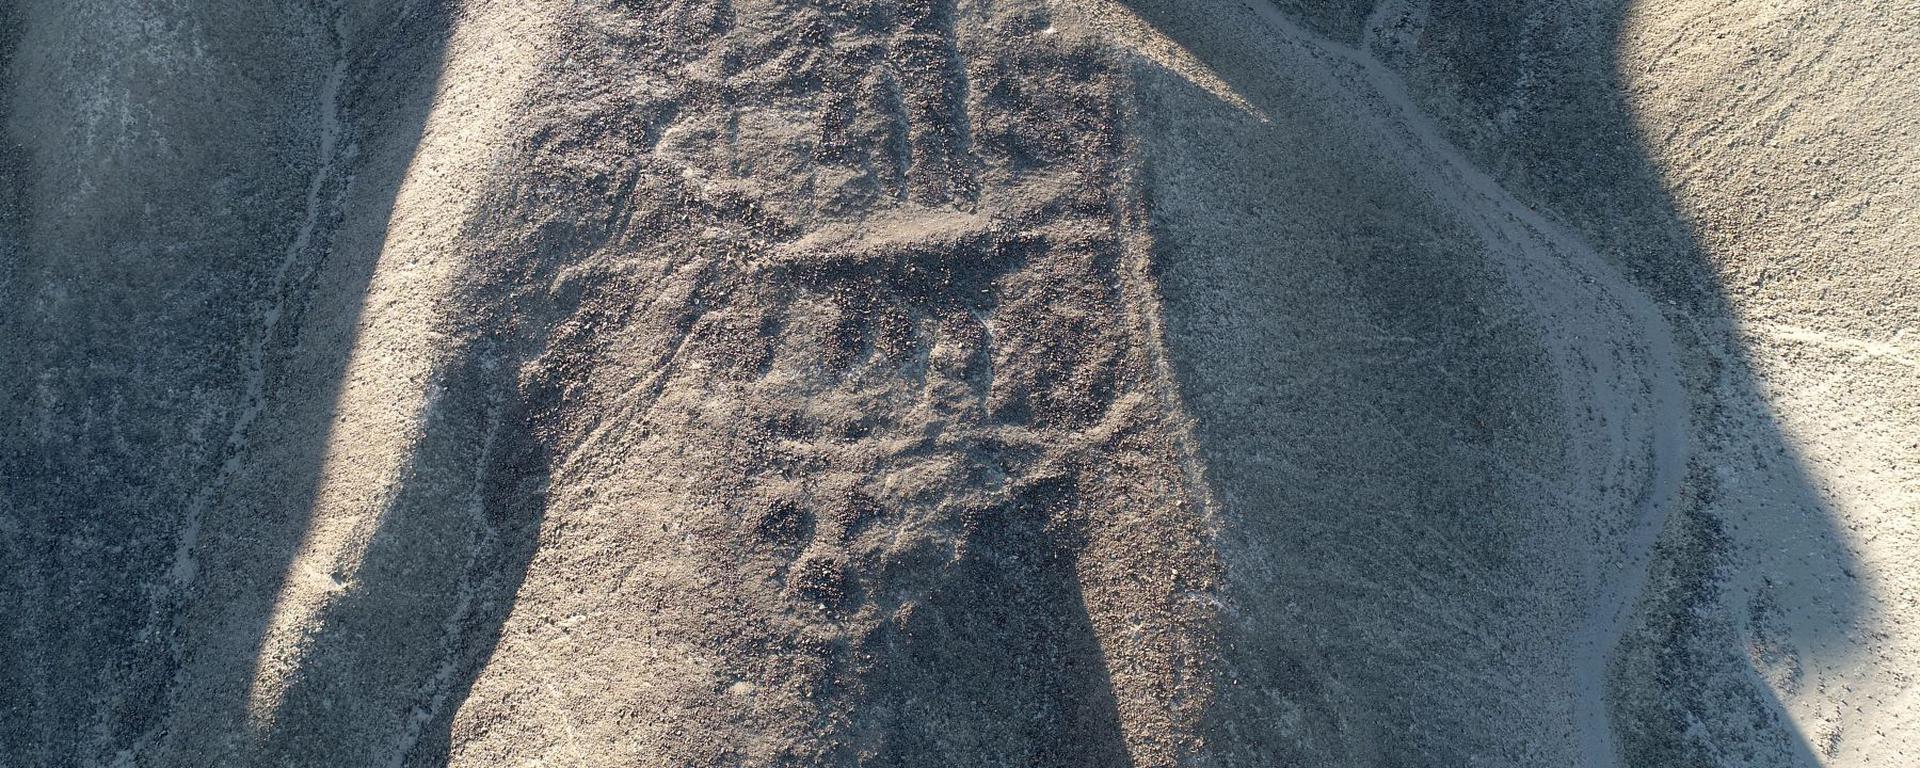 La historia detrás del descubrimiento de 29 nuevos geoglifos en Nazca: autofinanciamiento y largos años de trabajo